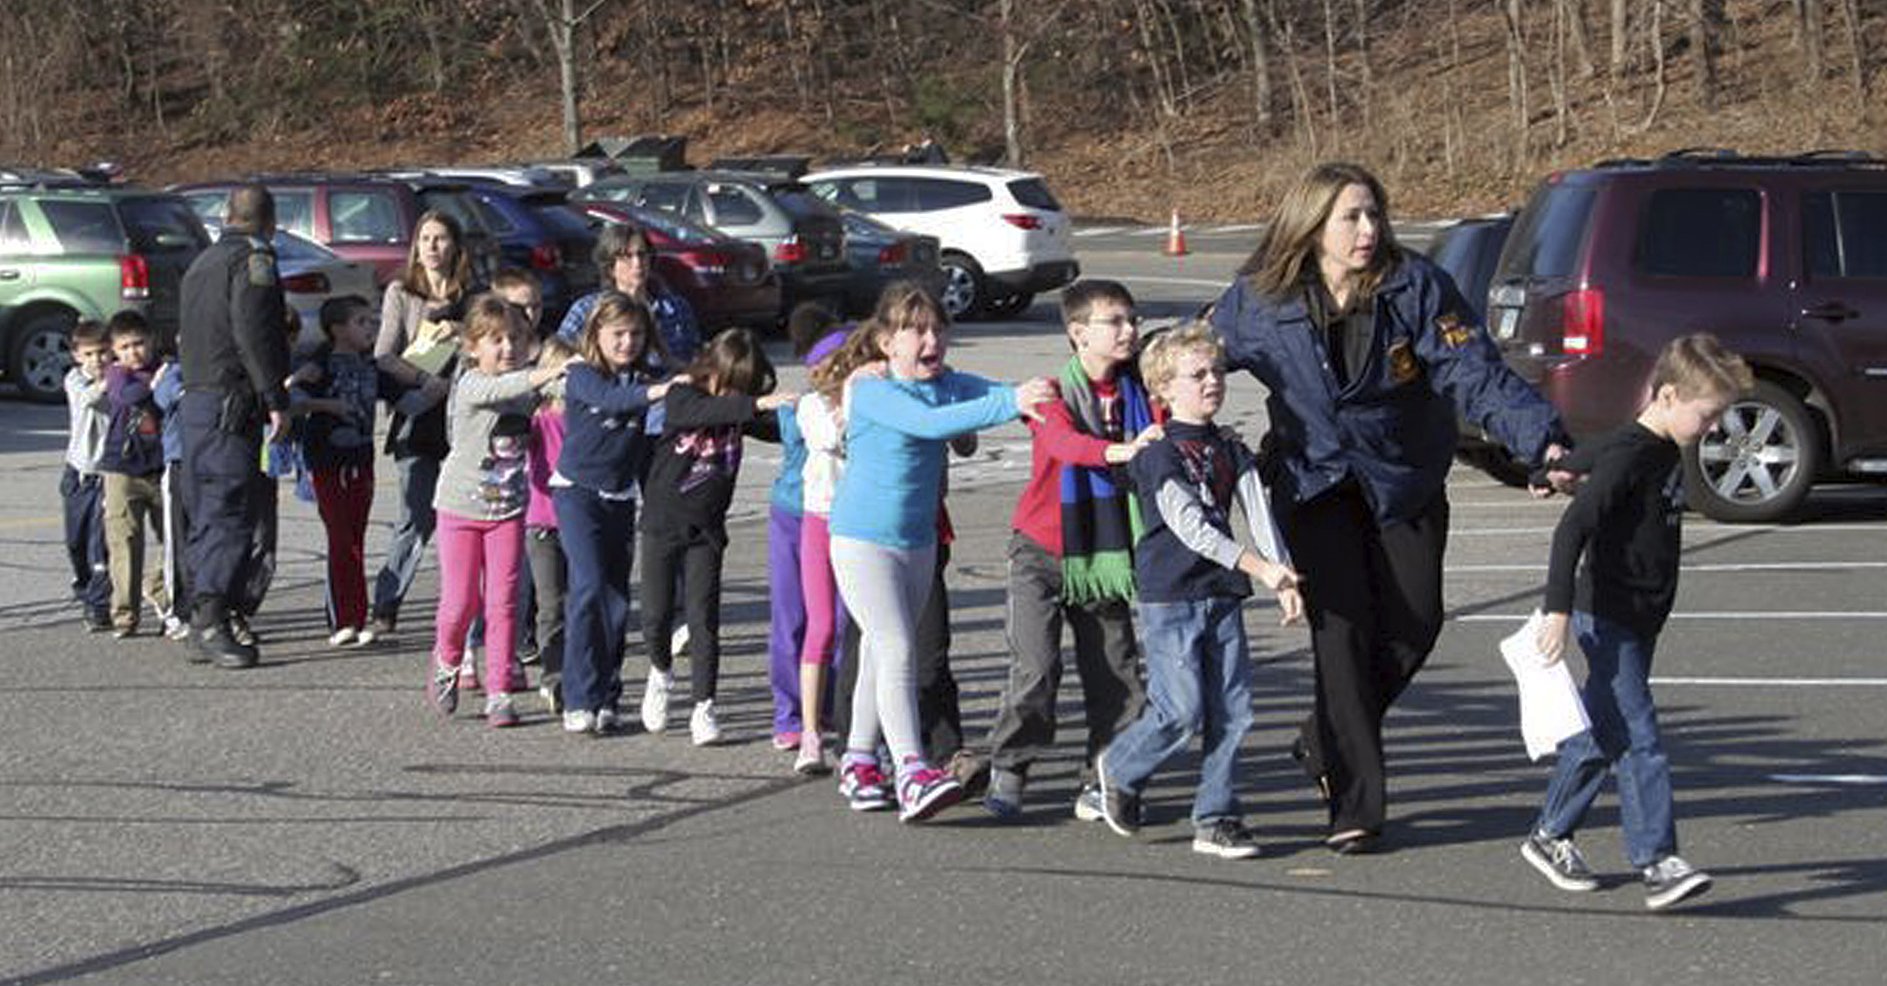 14 Dicembre 2012: alcuni bambini della Sandy Hook Elementary School portati in salvo dai poliziotti